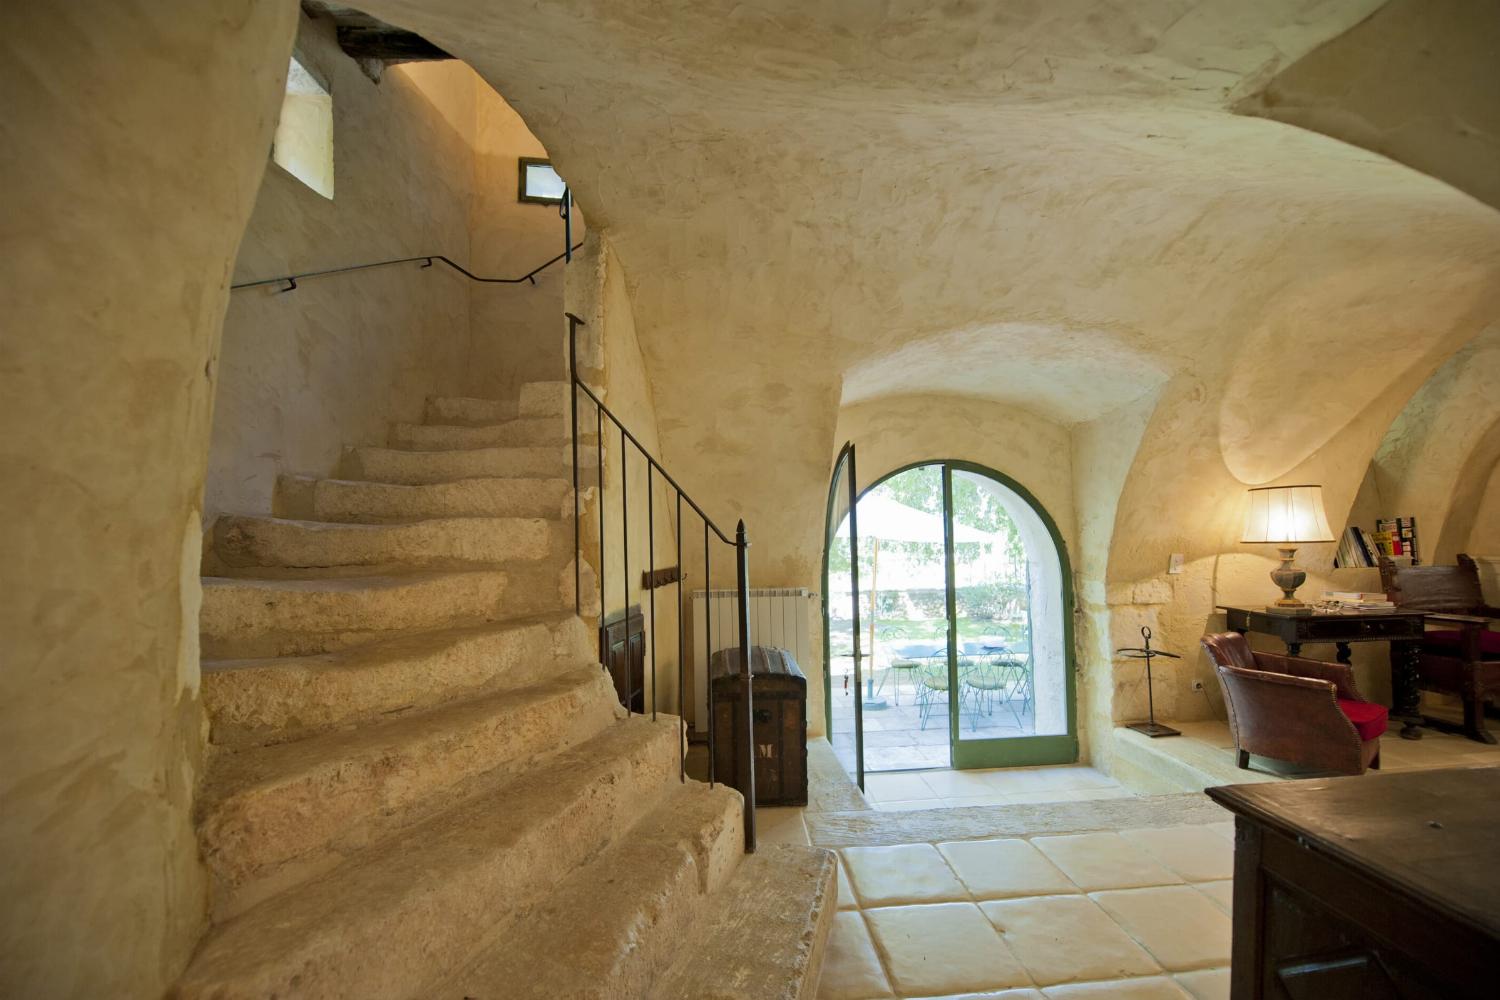 Escalier | Location maison dans le sud de la France